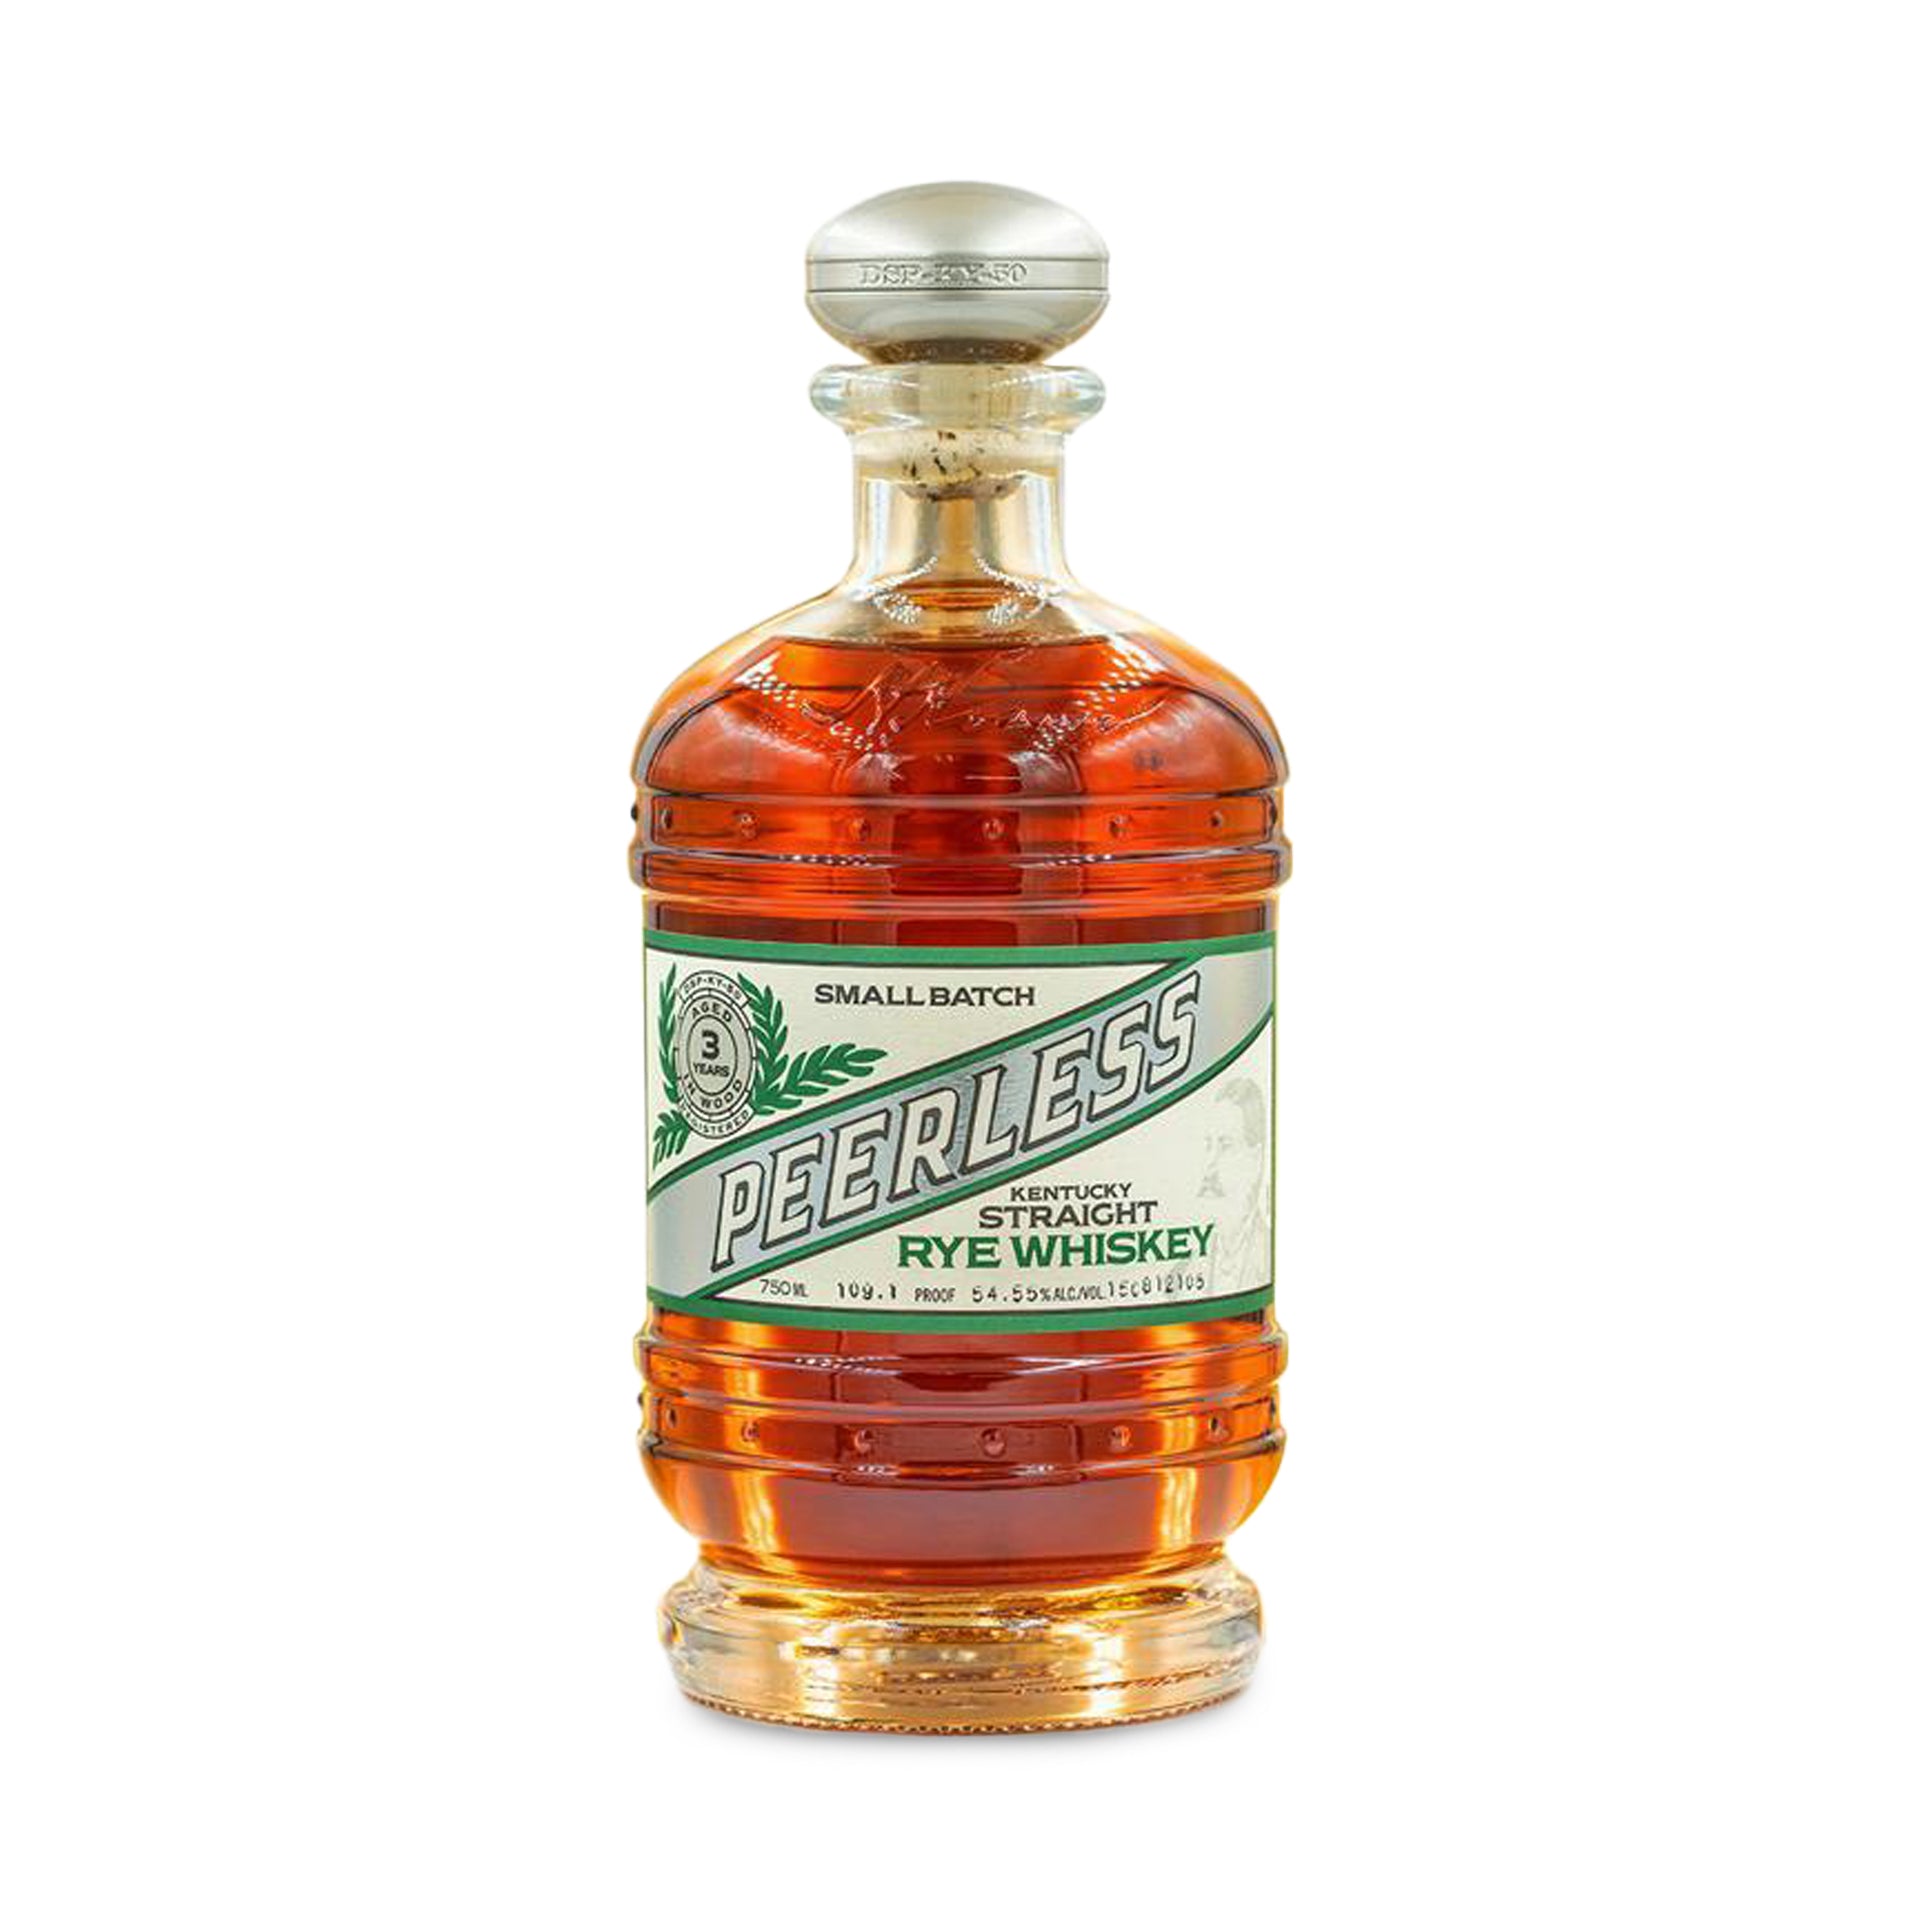 Peerless Straight Rye Whiskey